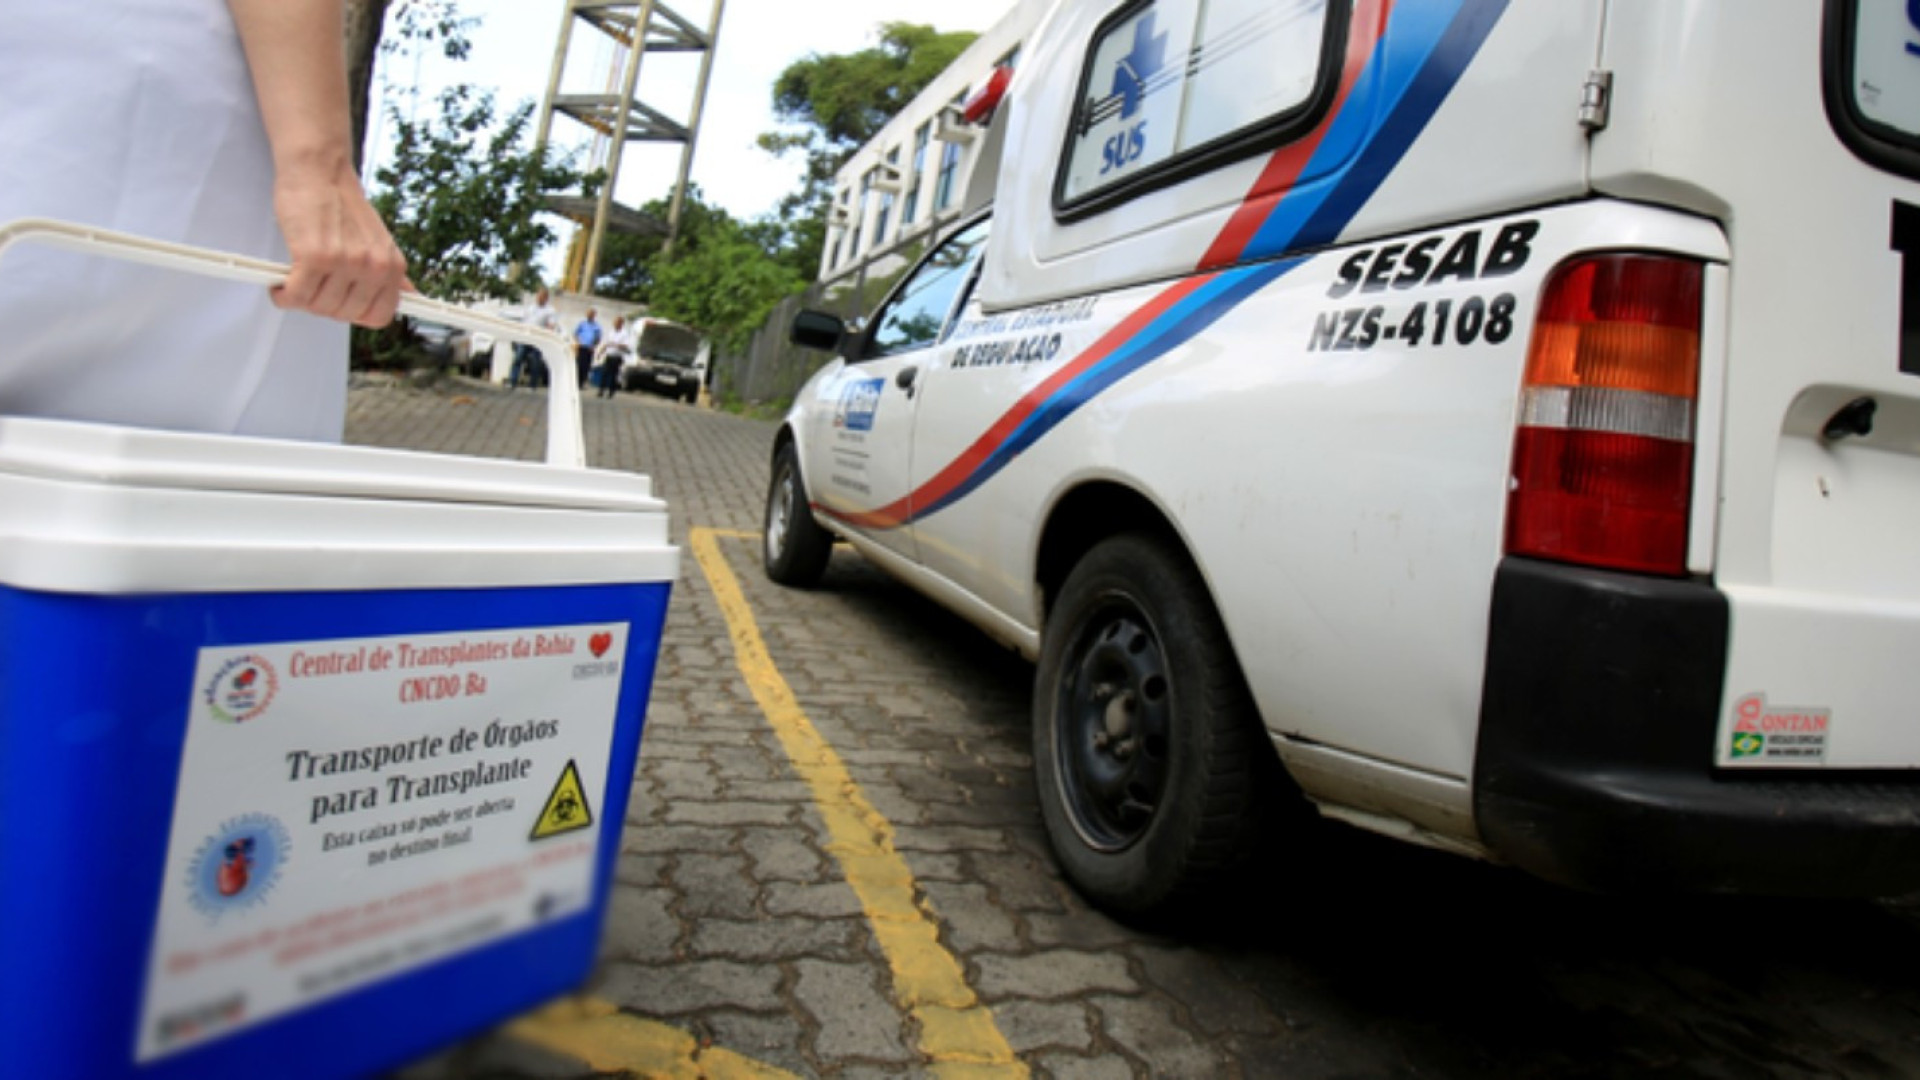 Brasil bate recorde de doadores de órgãos no primeiro semestre do ano